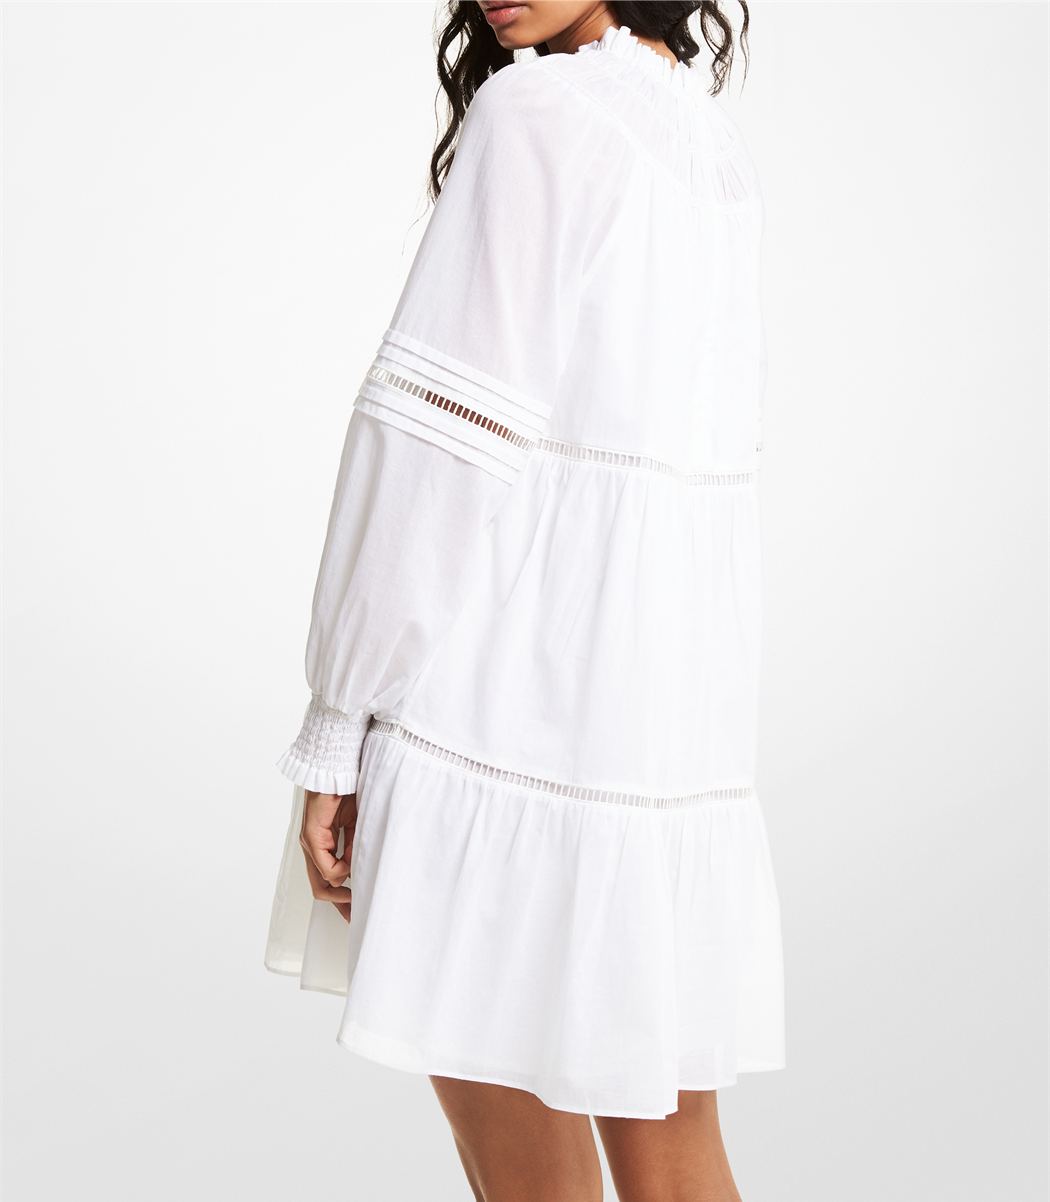 Michael Kors  Dresses  Michael Kors Beaded Embroidered White Dress   Poshmark